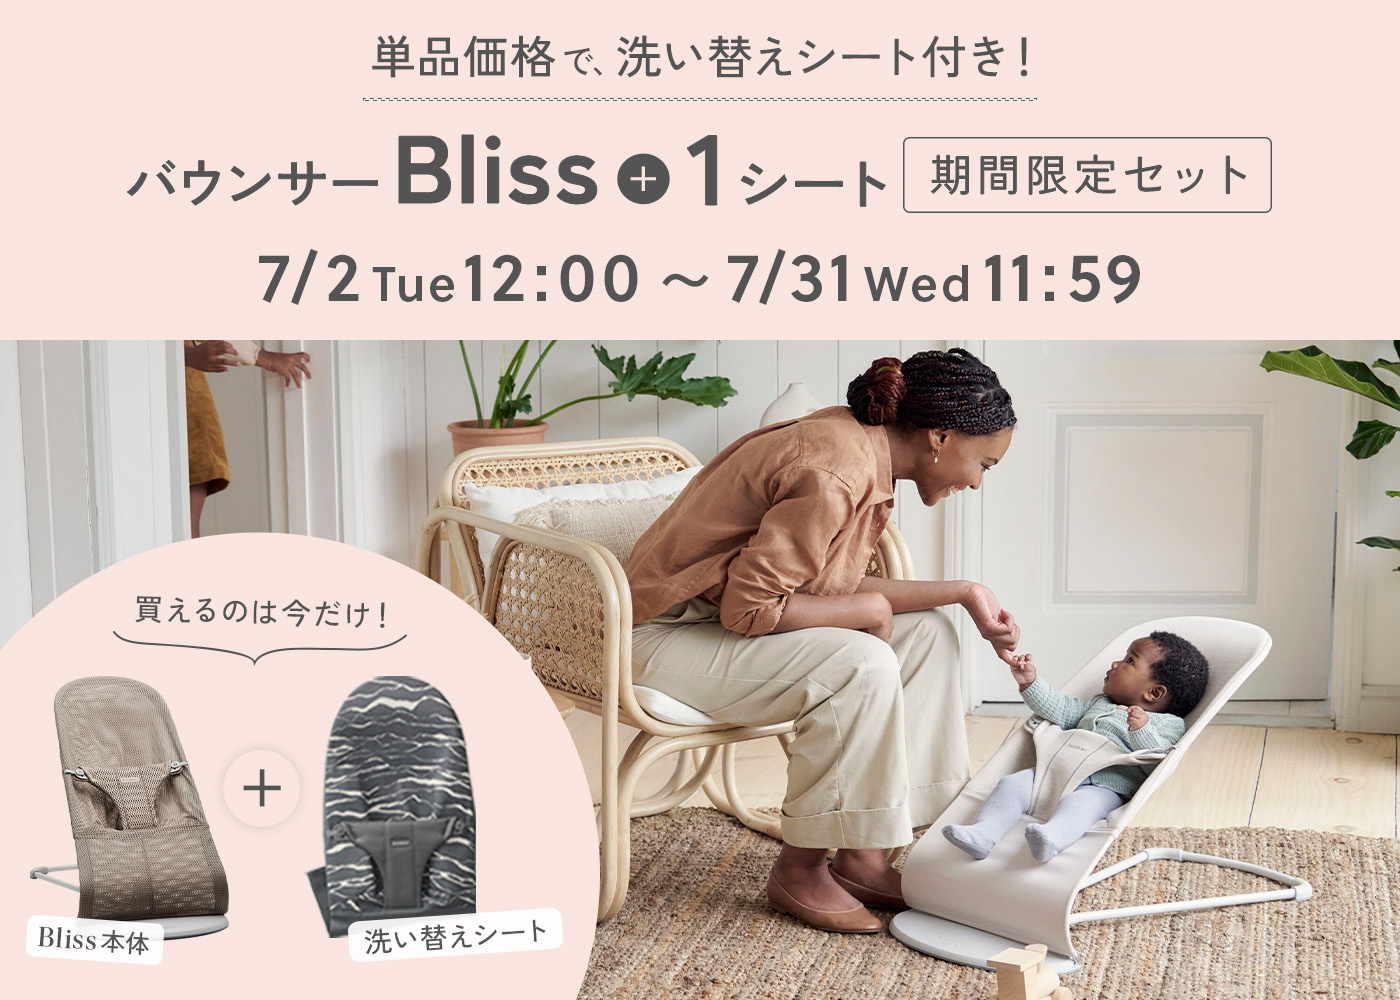 【期間限定】Bliss+ファブリックシート